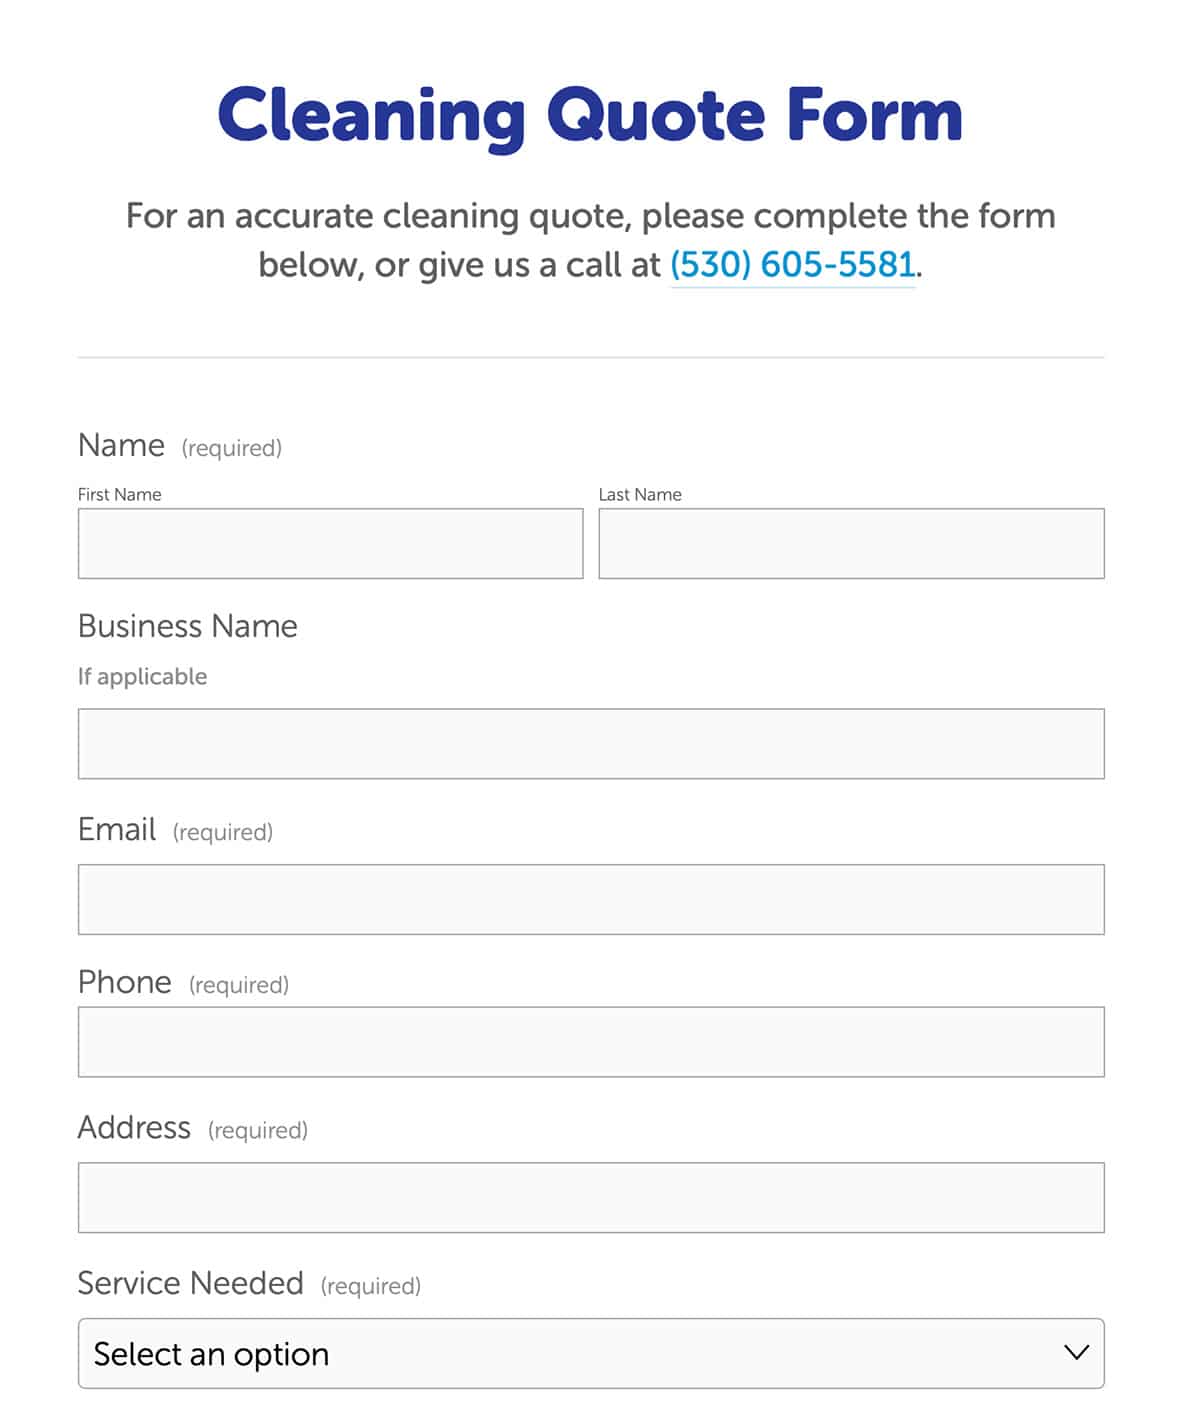 Obțineți o secțiune de cotație pentru site-ul companiei de curățenie